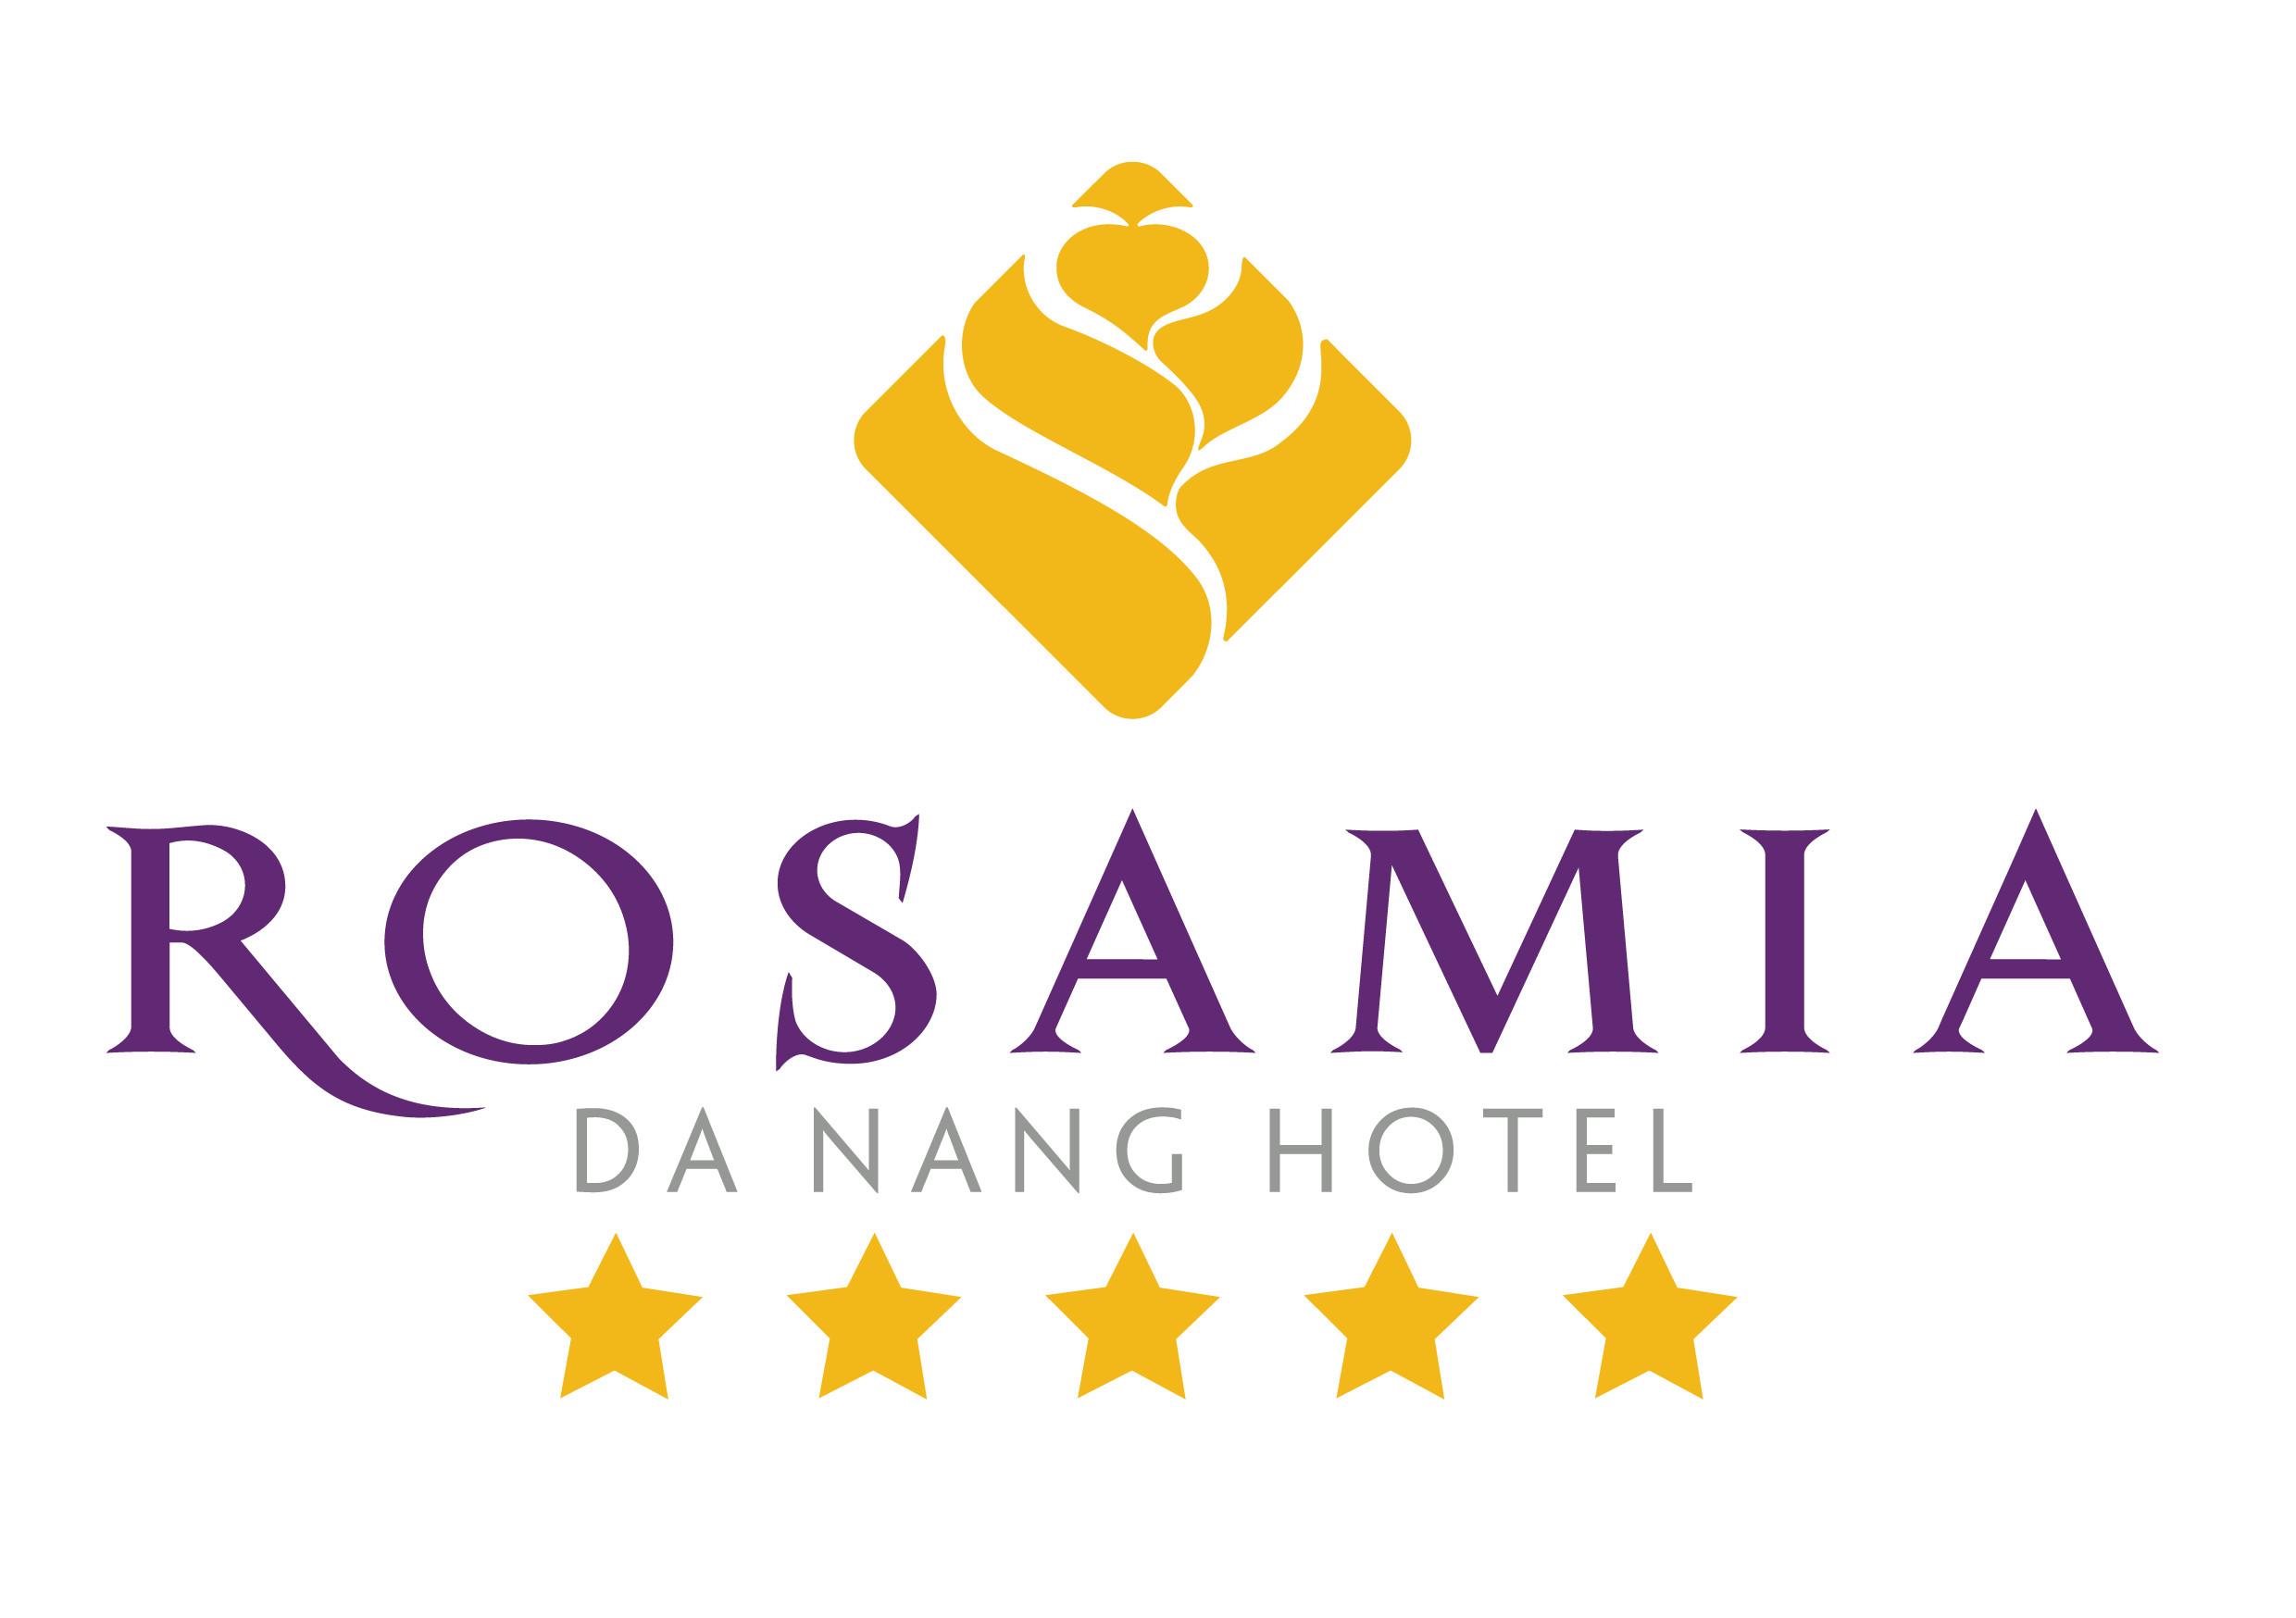 Thợ Sơn(PU) ở Rosamia Da Nang Hotel: 175435 - Hoteljob.vn